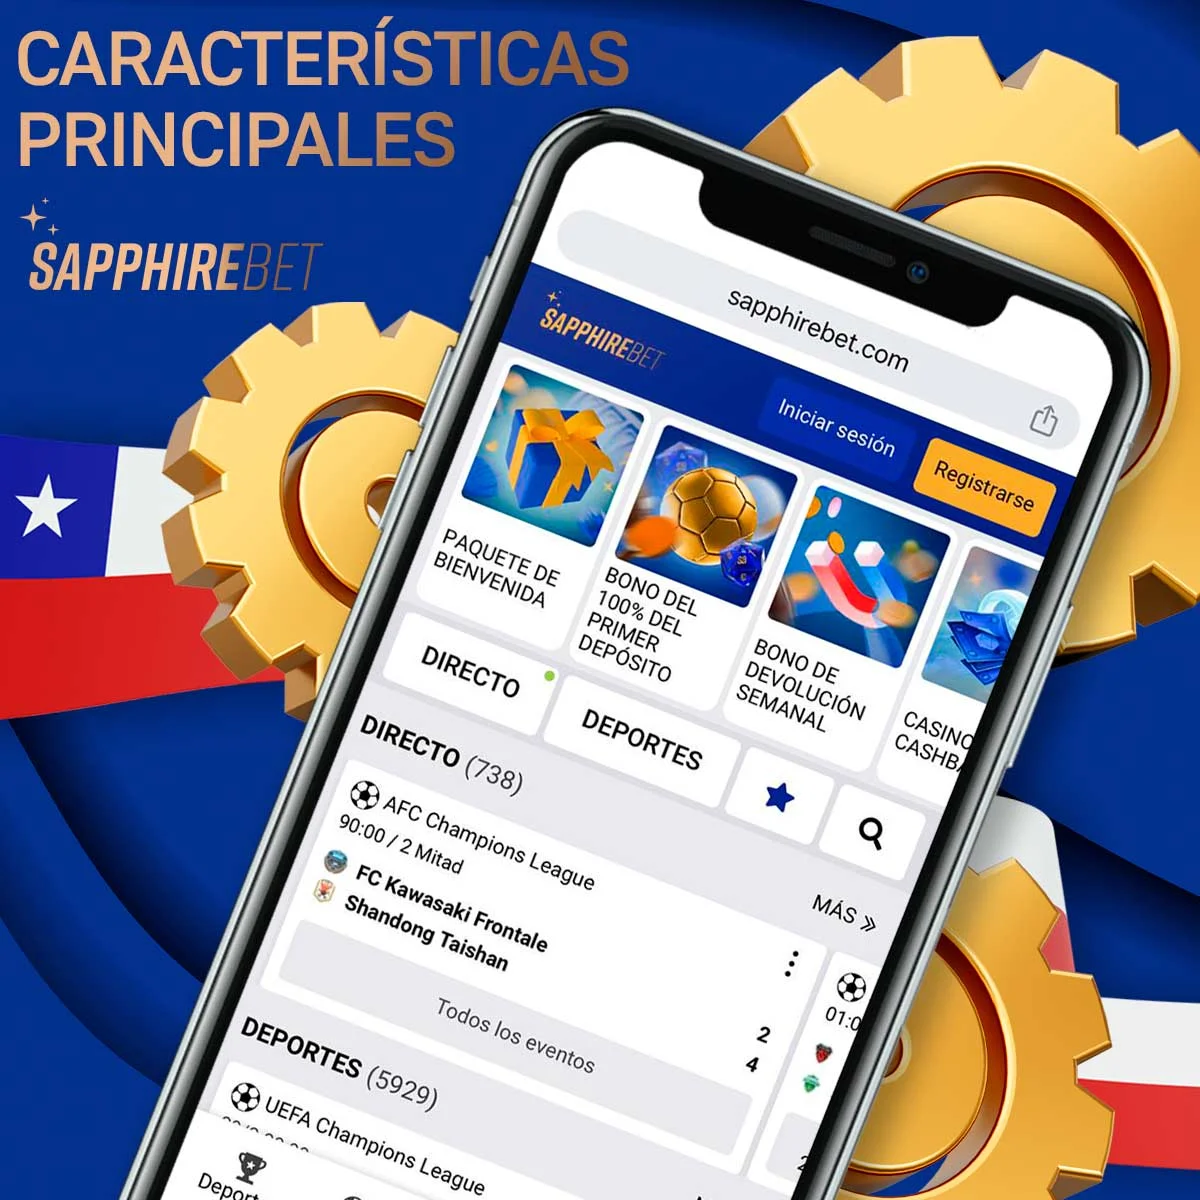 Los principales pros y contras de la app de Sapphirebet en Chile